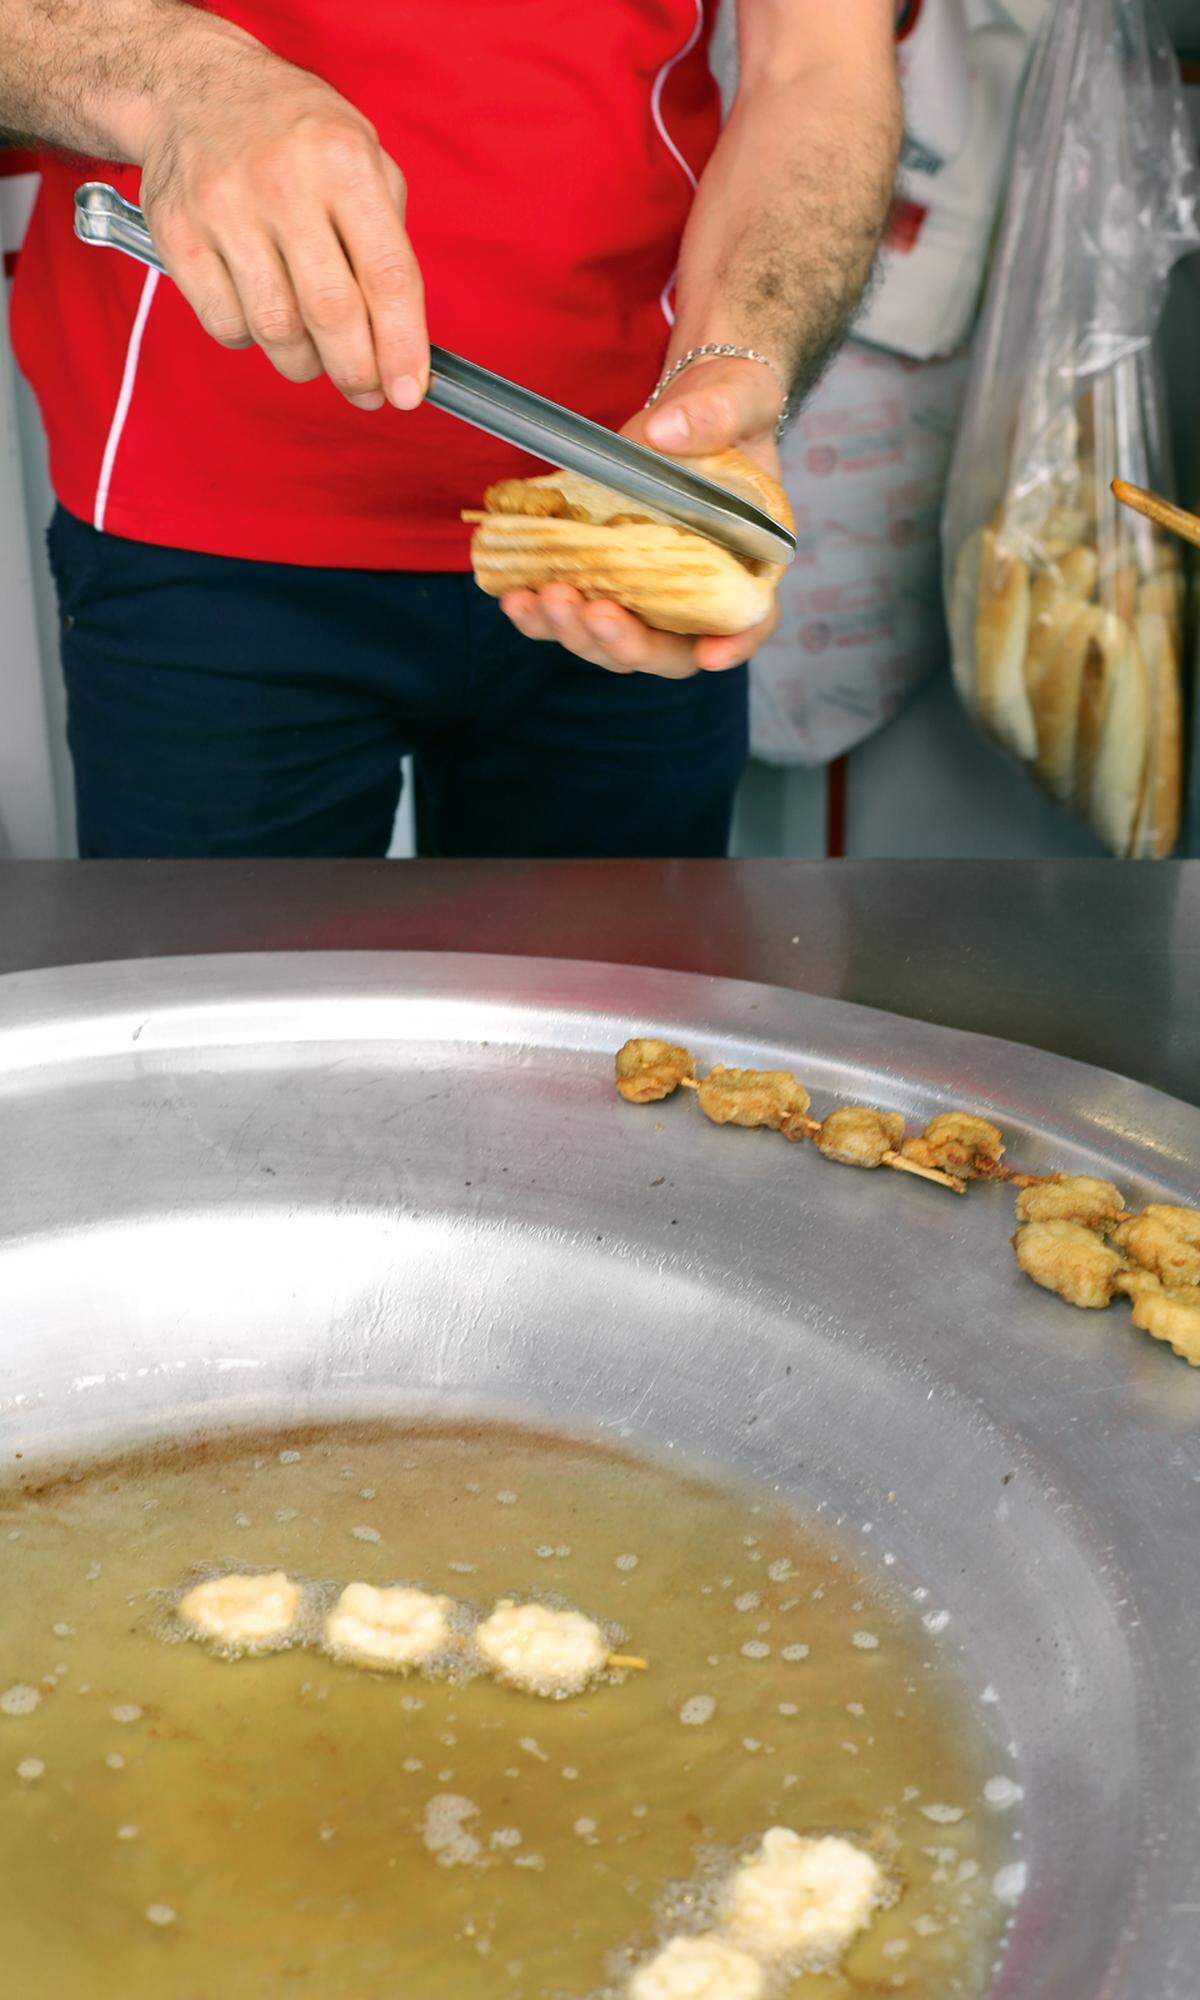 Knusprig. Frittierte Muscheln, Midye Tava, sind ein typisches Straßenessen.